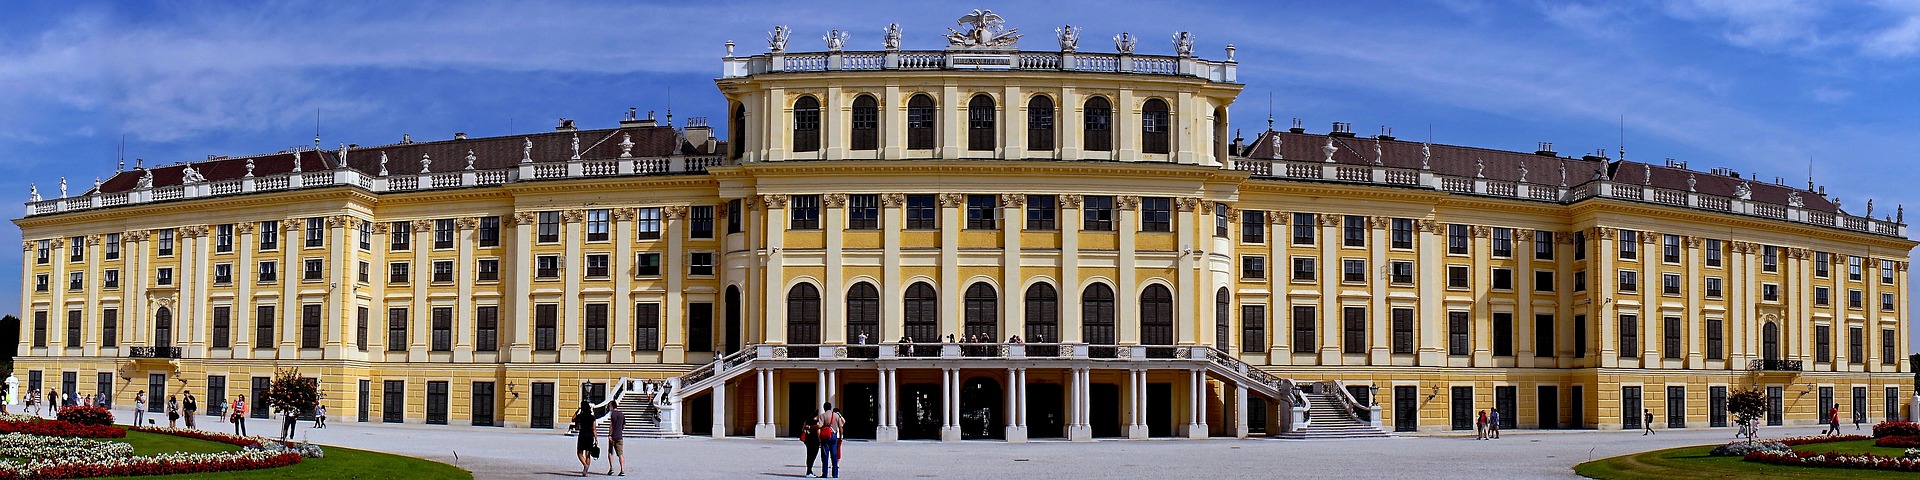 Schloß Schönbrunn, Wien, Österreich